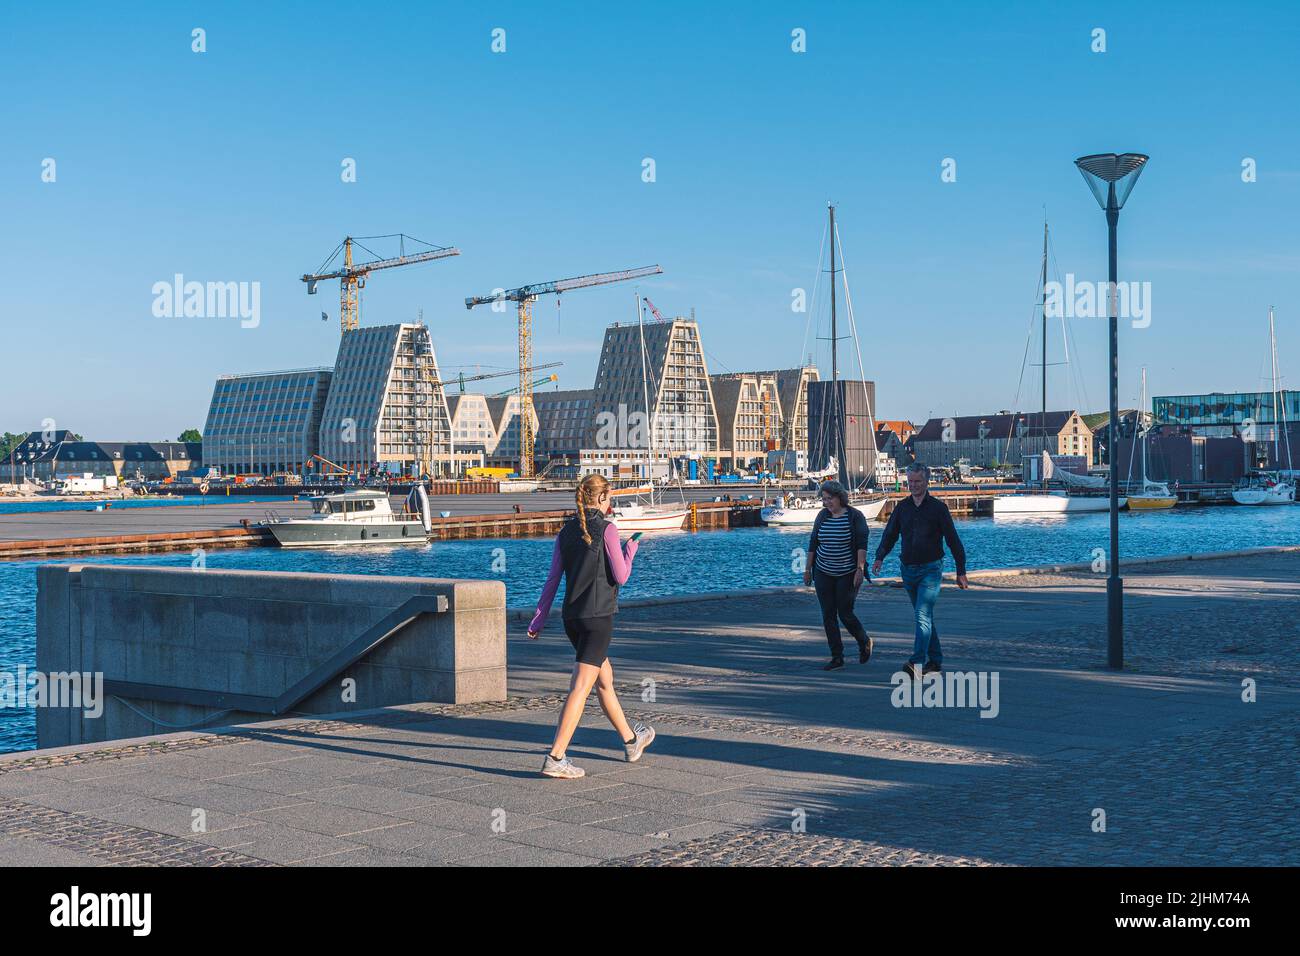 Nuovi appartamenti e uffici in costruzione a Papirøen, isola di carta al centro del porto interno di Copenhagen, Danimarca, con la ragazza Foto Stock